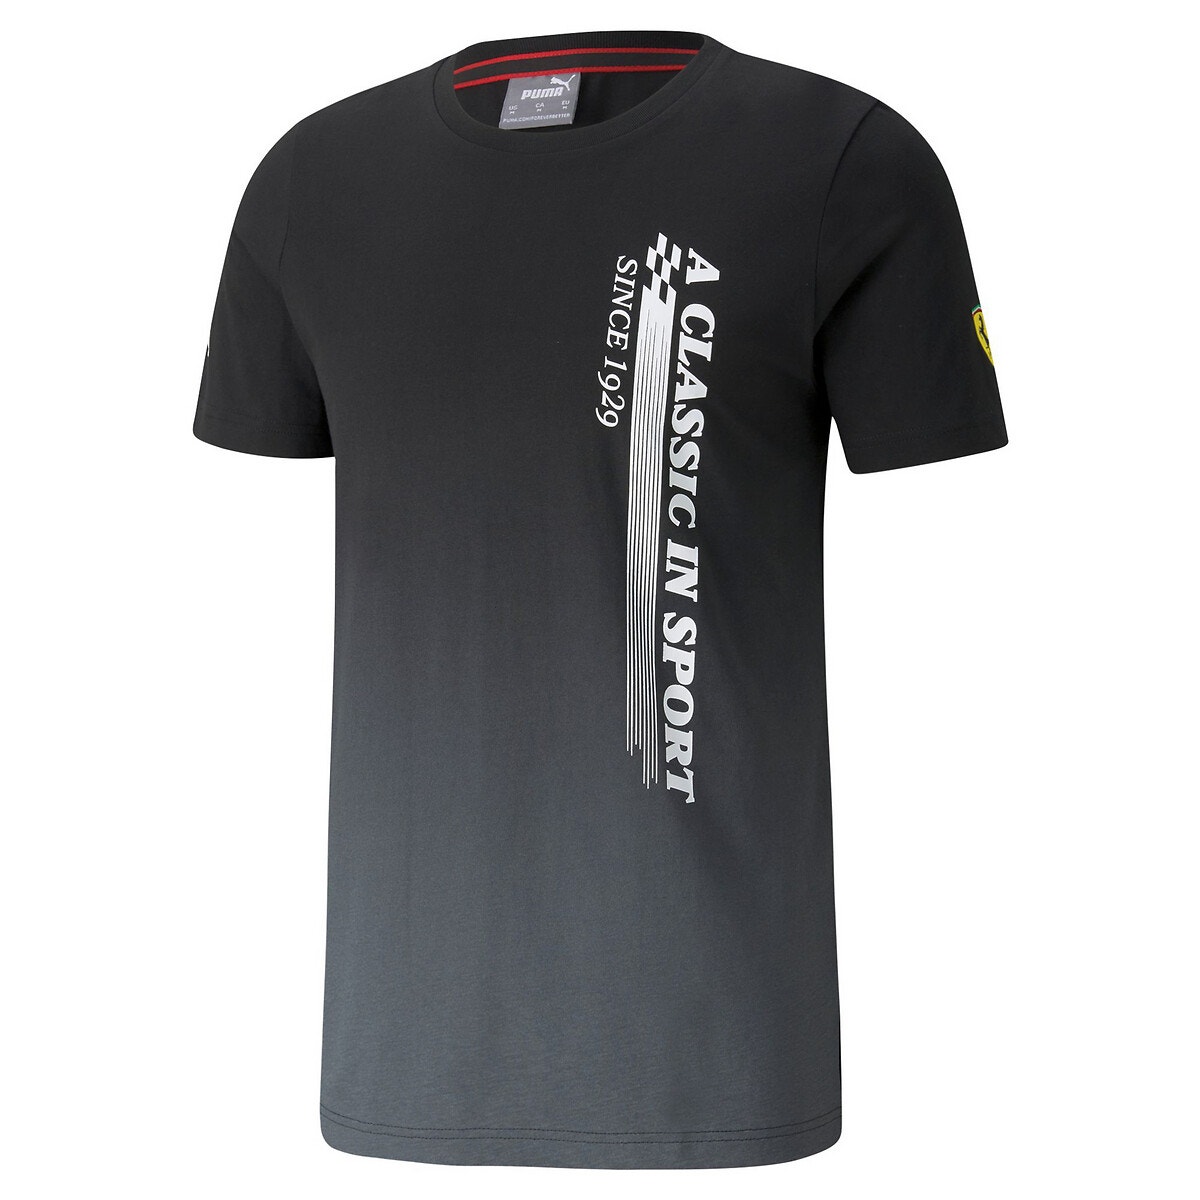 ΑΝΔΡΑΣ | Μπλούζες & Πουκάμισα | T-shirts Κοντομάνικο T-shirt, Motorsport Ferrari